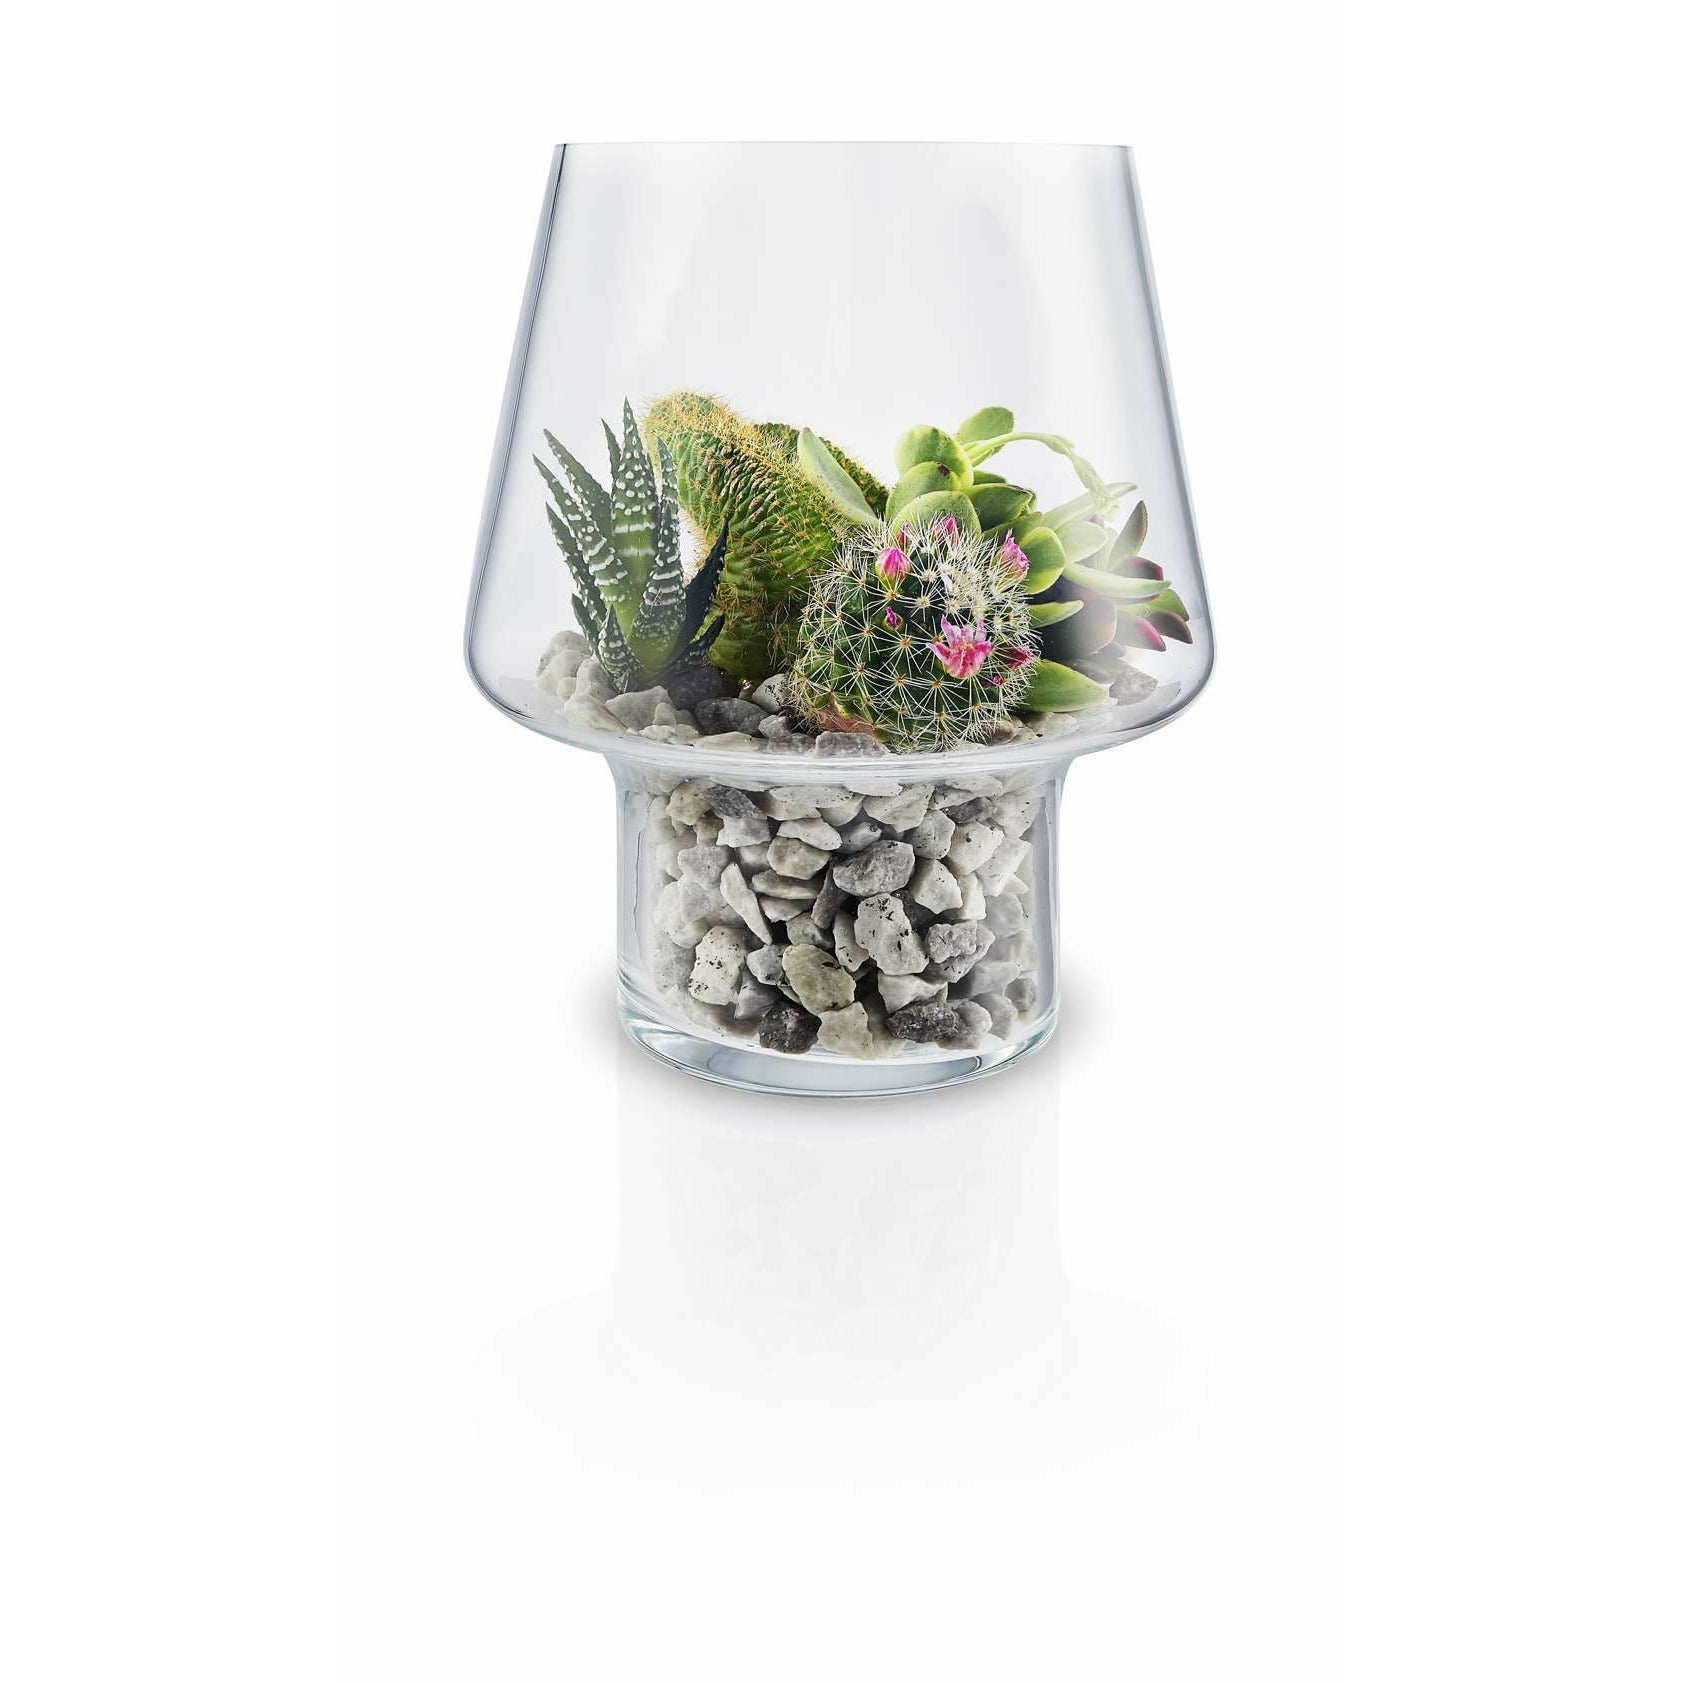 Eva Solo Le vase succulent en verre, Ø15 cm